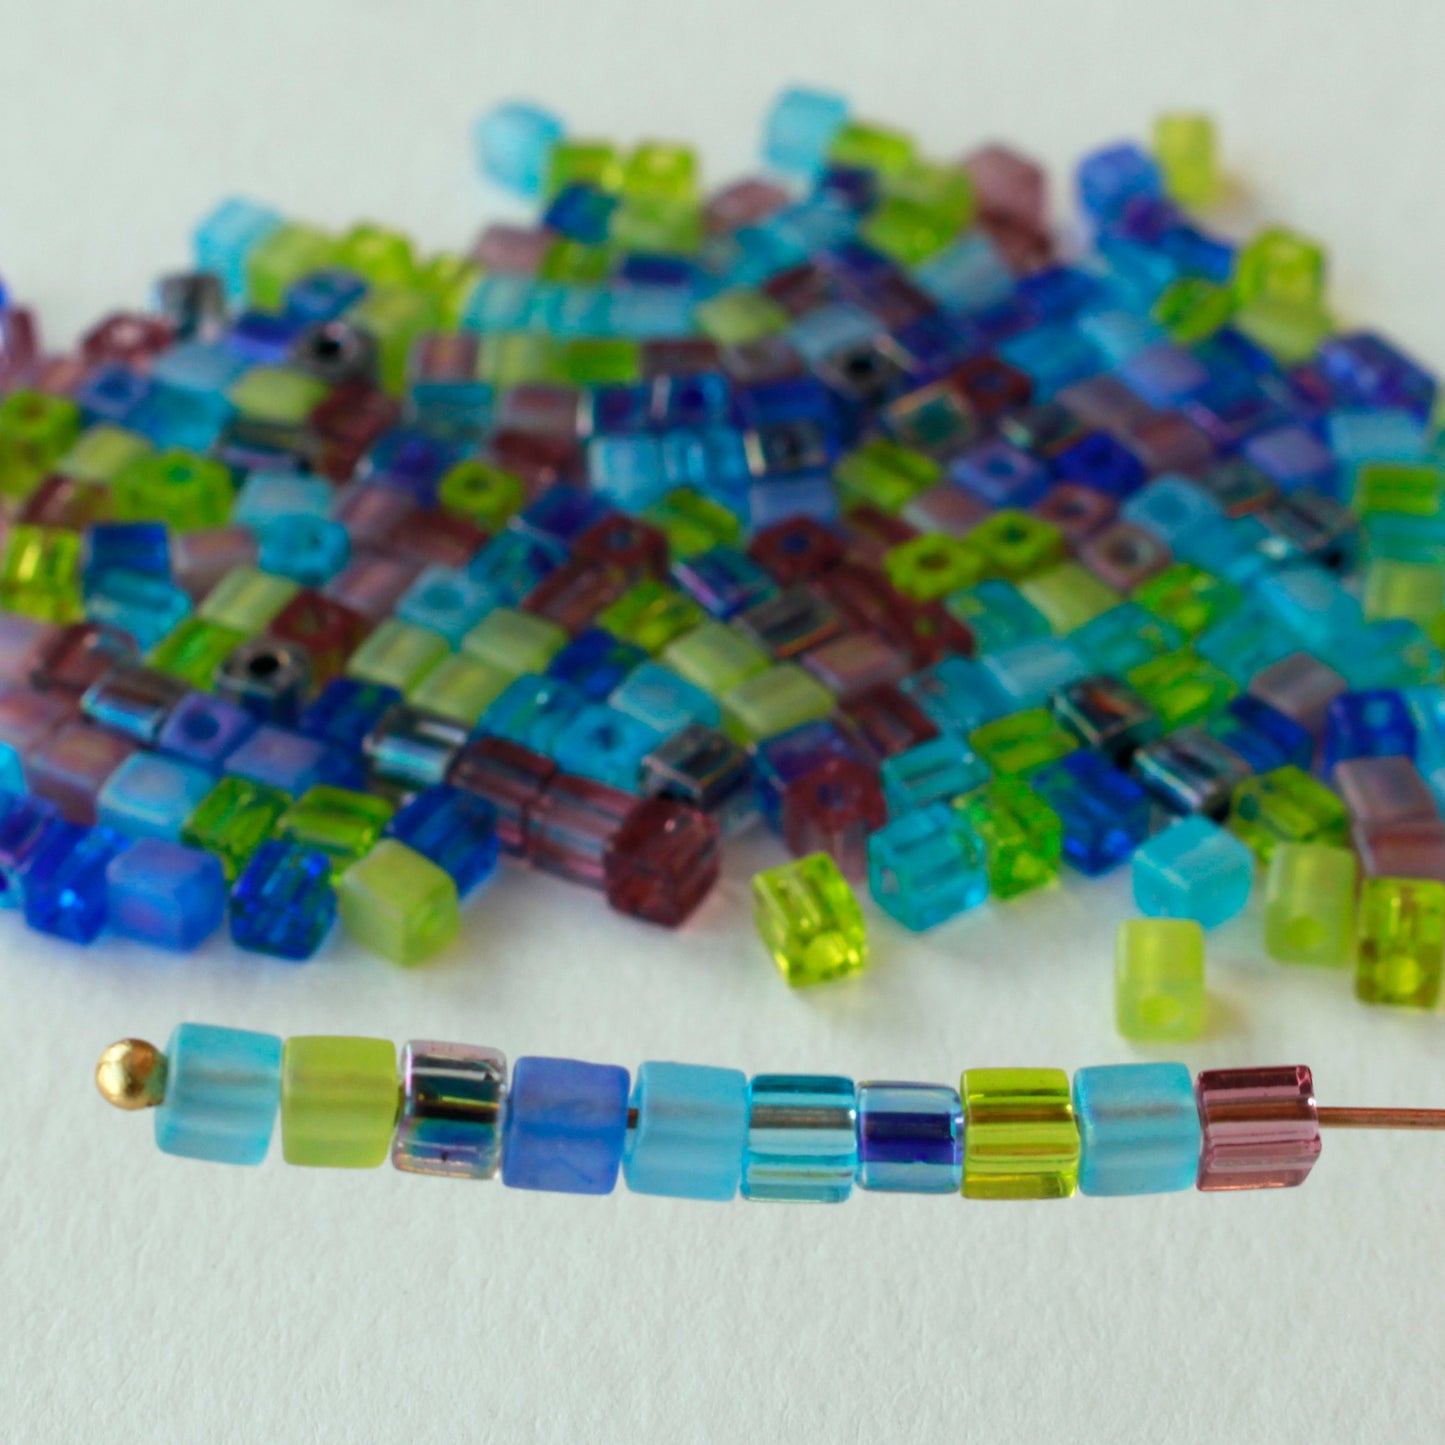 4mm Miyuki Cube Beads  - Jewel Tone Mixed Textures - 20 or 60 grams